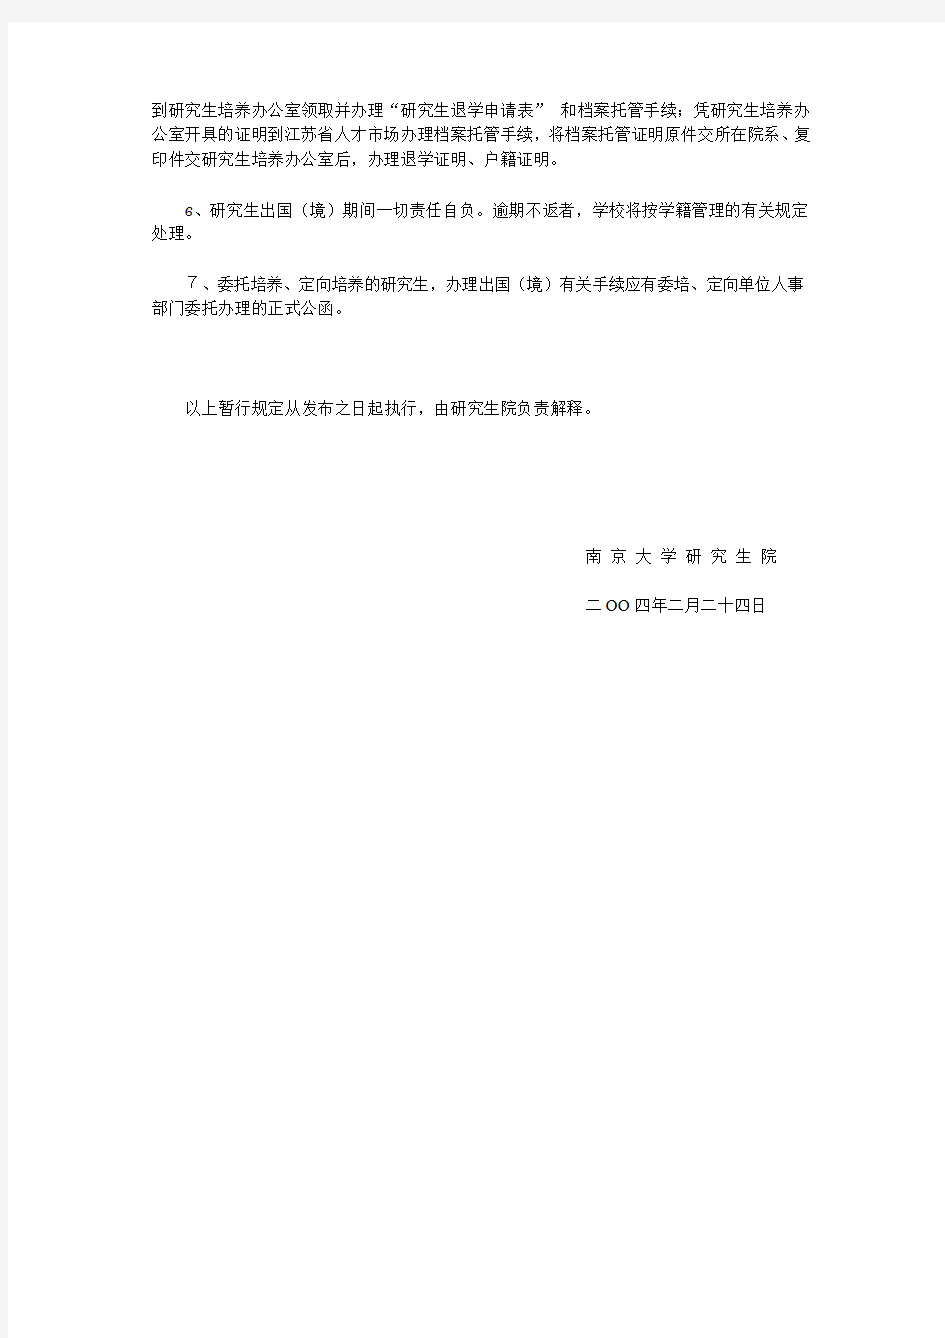 南京大学 关于研究生出国(境)管理的暂行规定